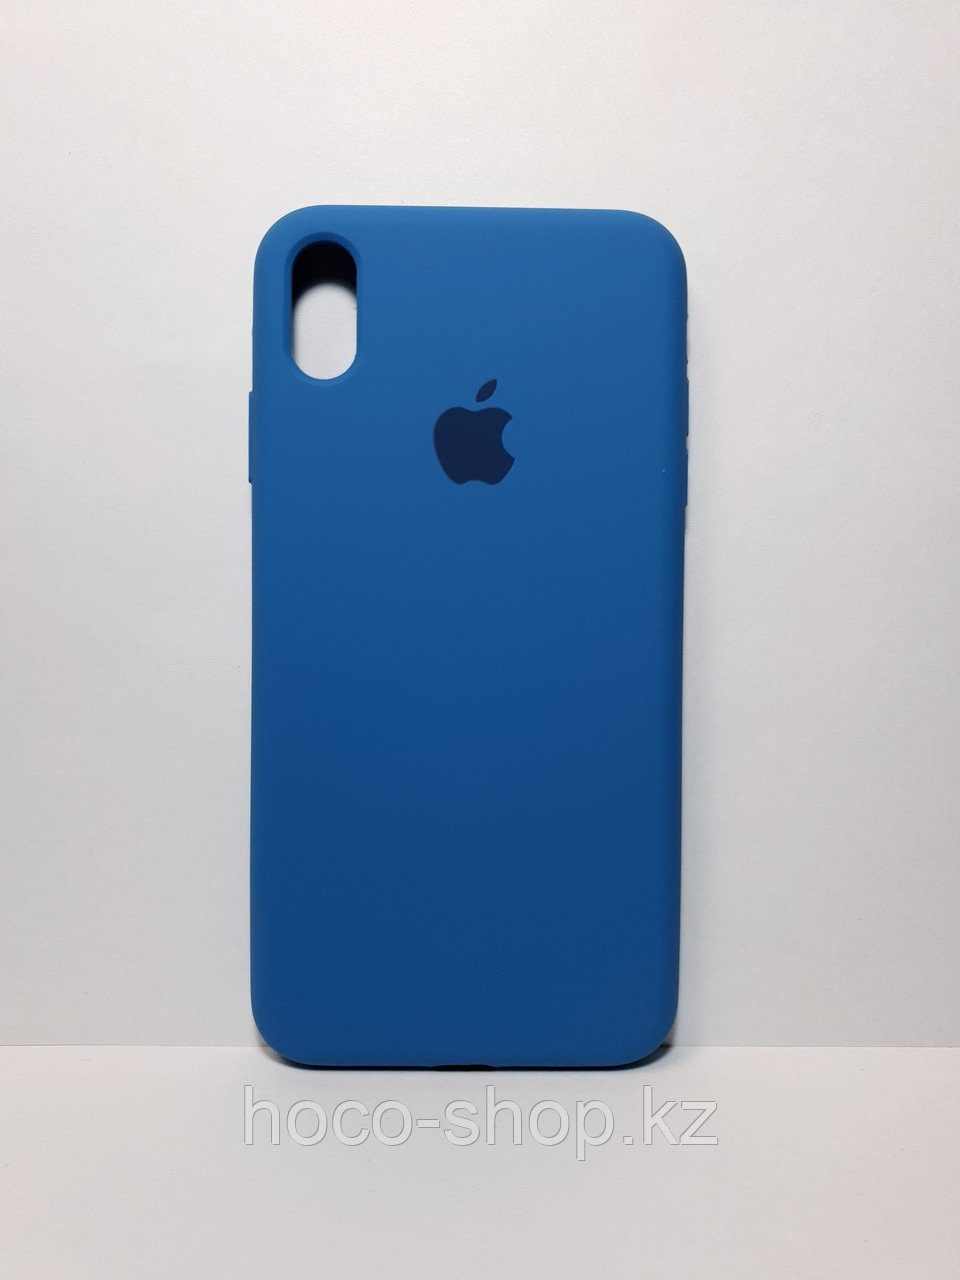 Защитный чехол для iPhone Xs Max Soft Touch силиконовый, синий